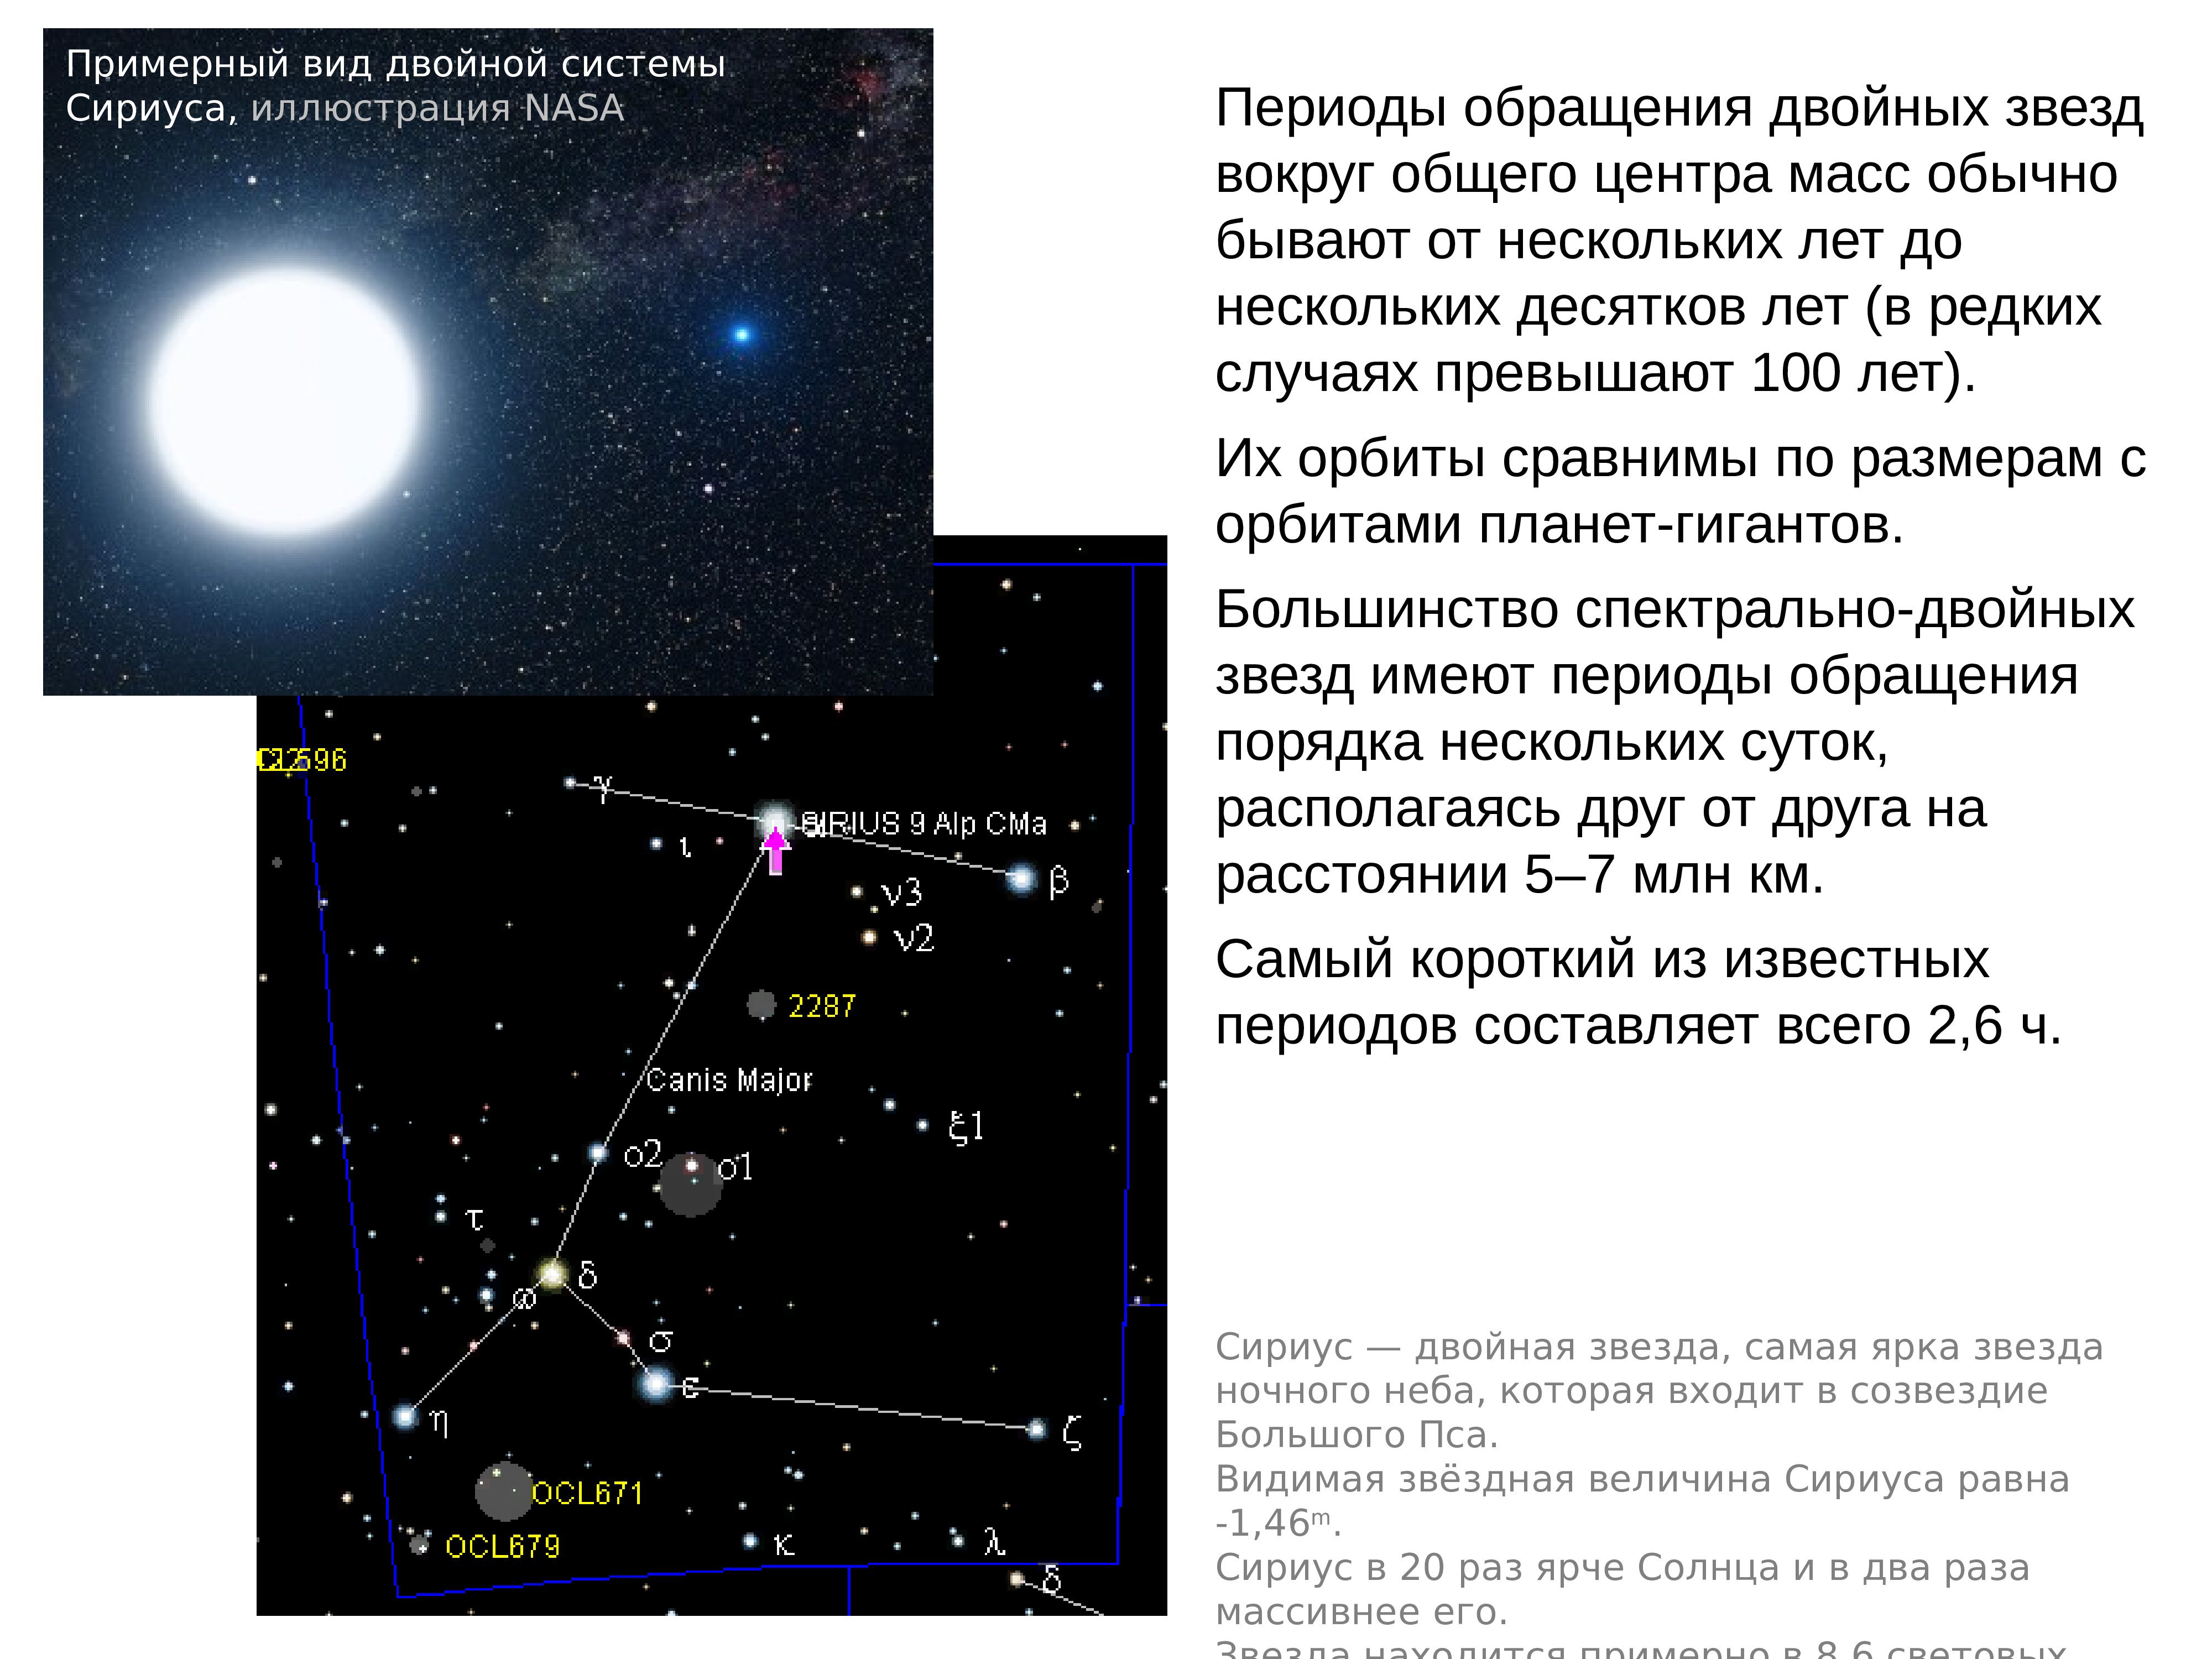 Звезда какой величины ярче. Видимая Звездная величина Сириуса. Период обращения двойной звезды. Звездная велична Сириуса. Видимая Звёздная величина Сириуса равна.